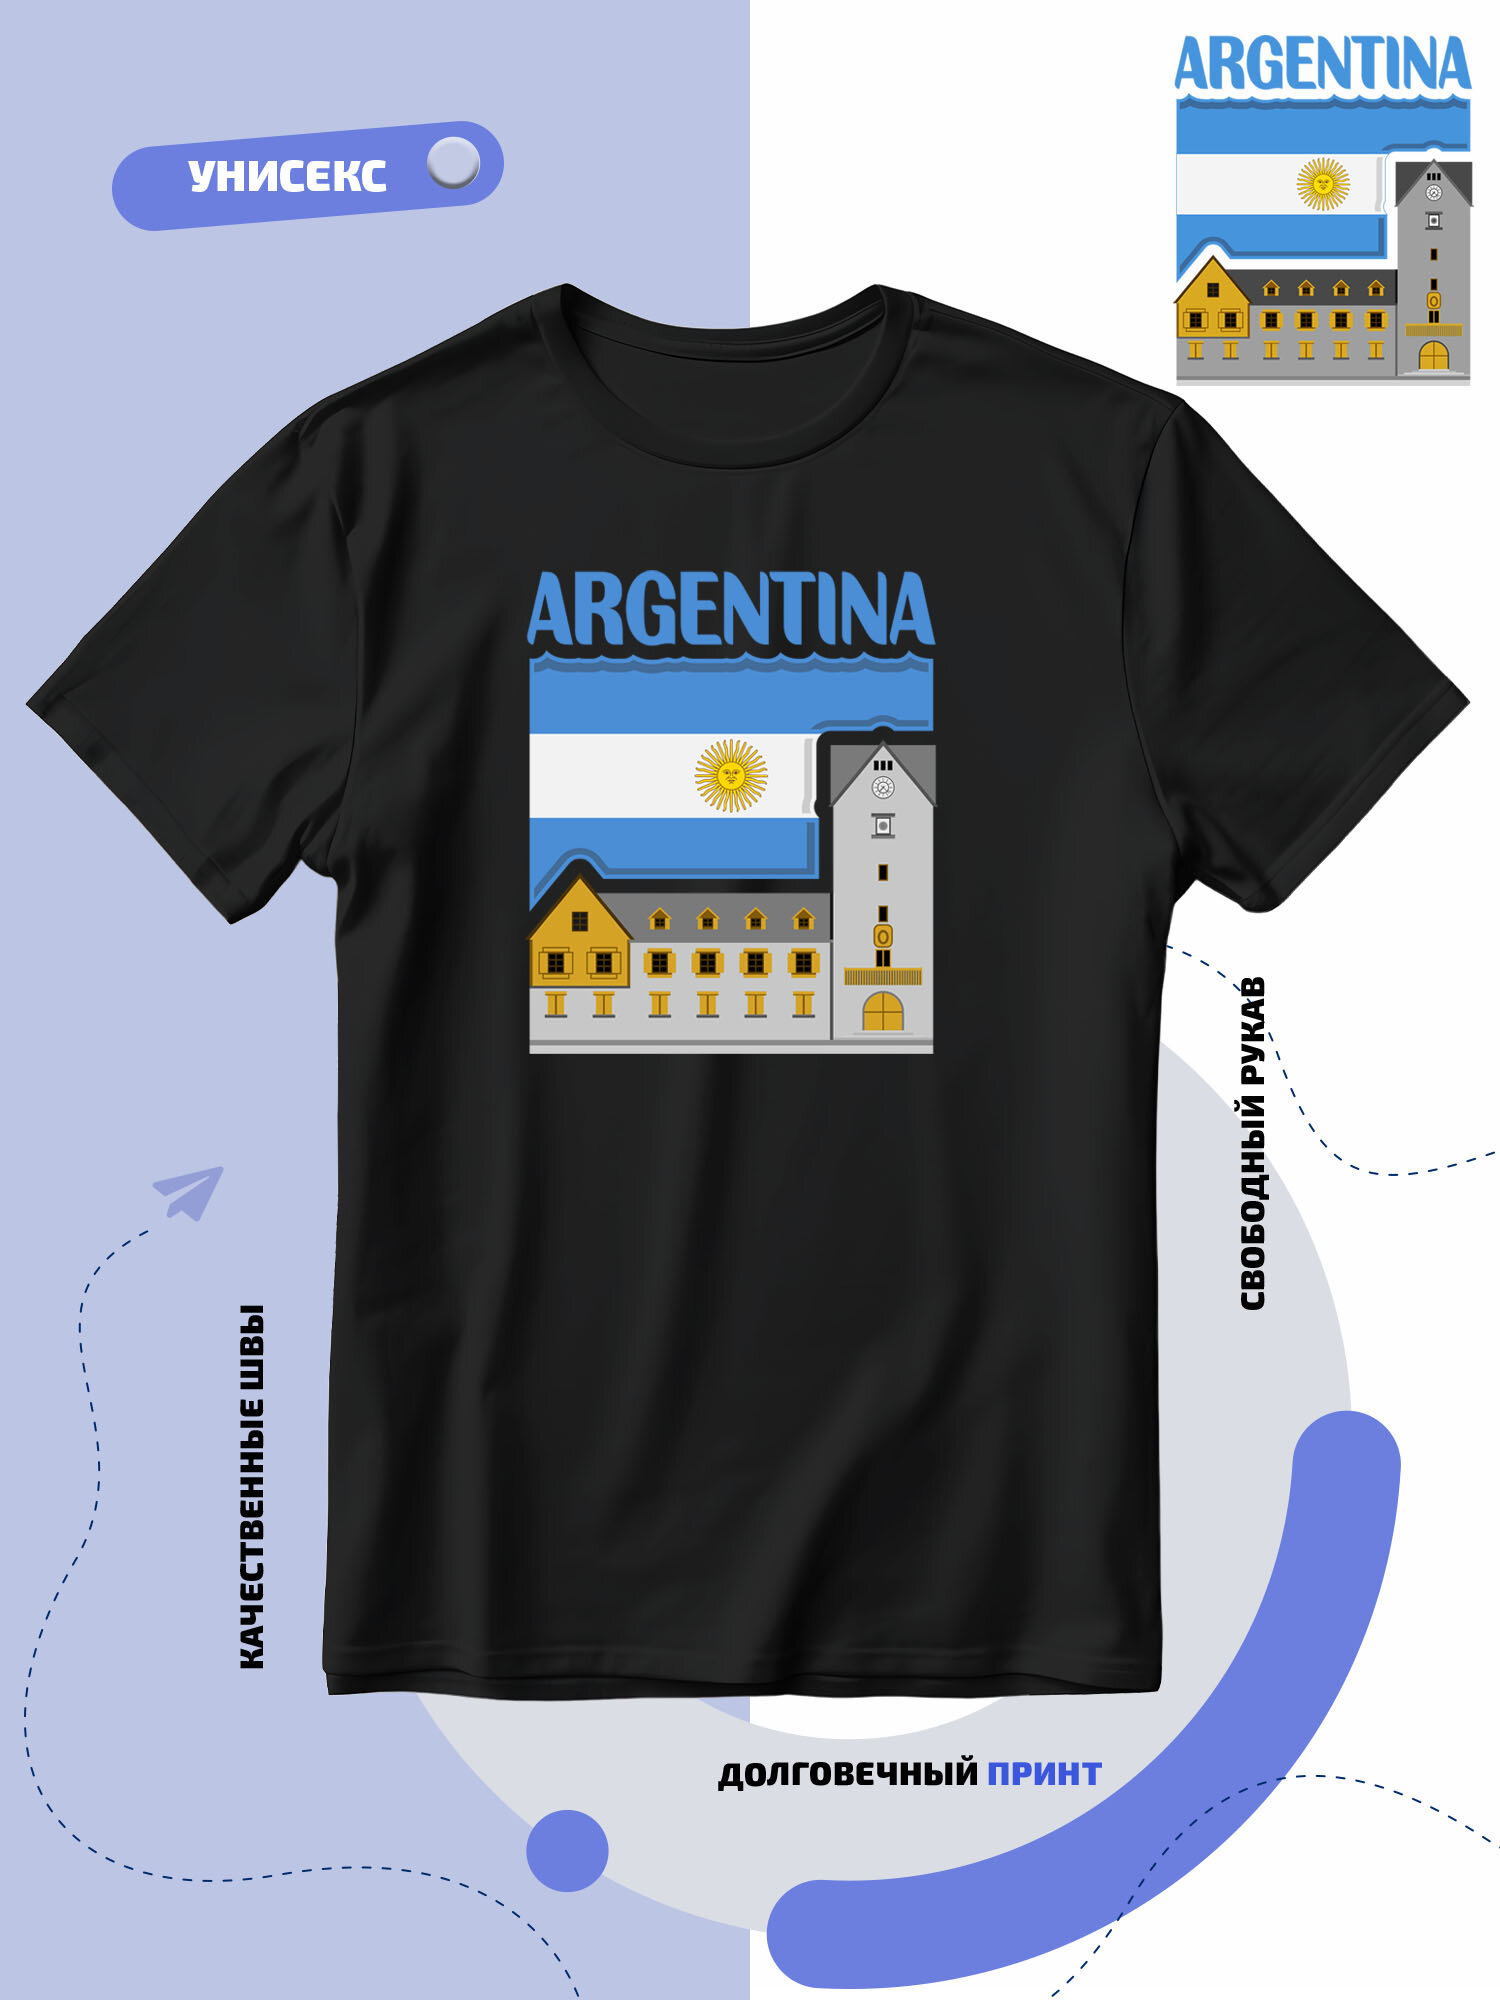 Футболка SMAIL-P флаг Аргентины-Argentina и достопримечательность